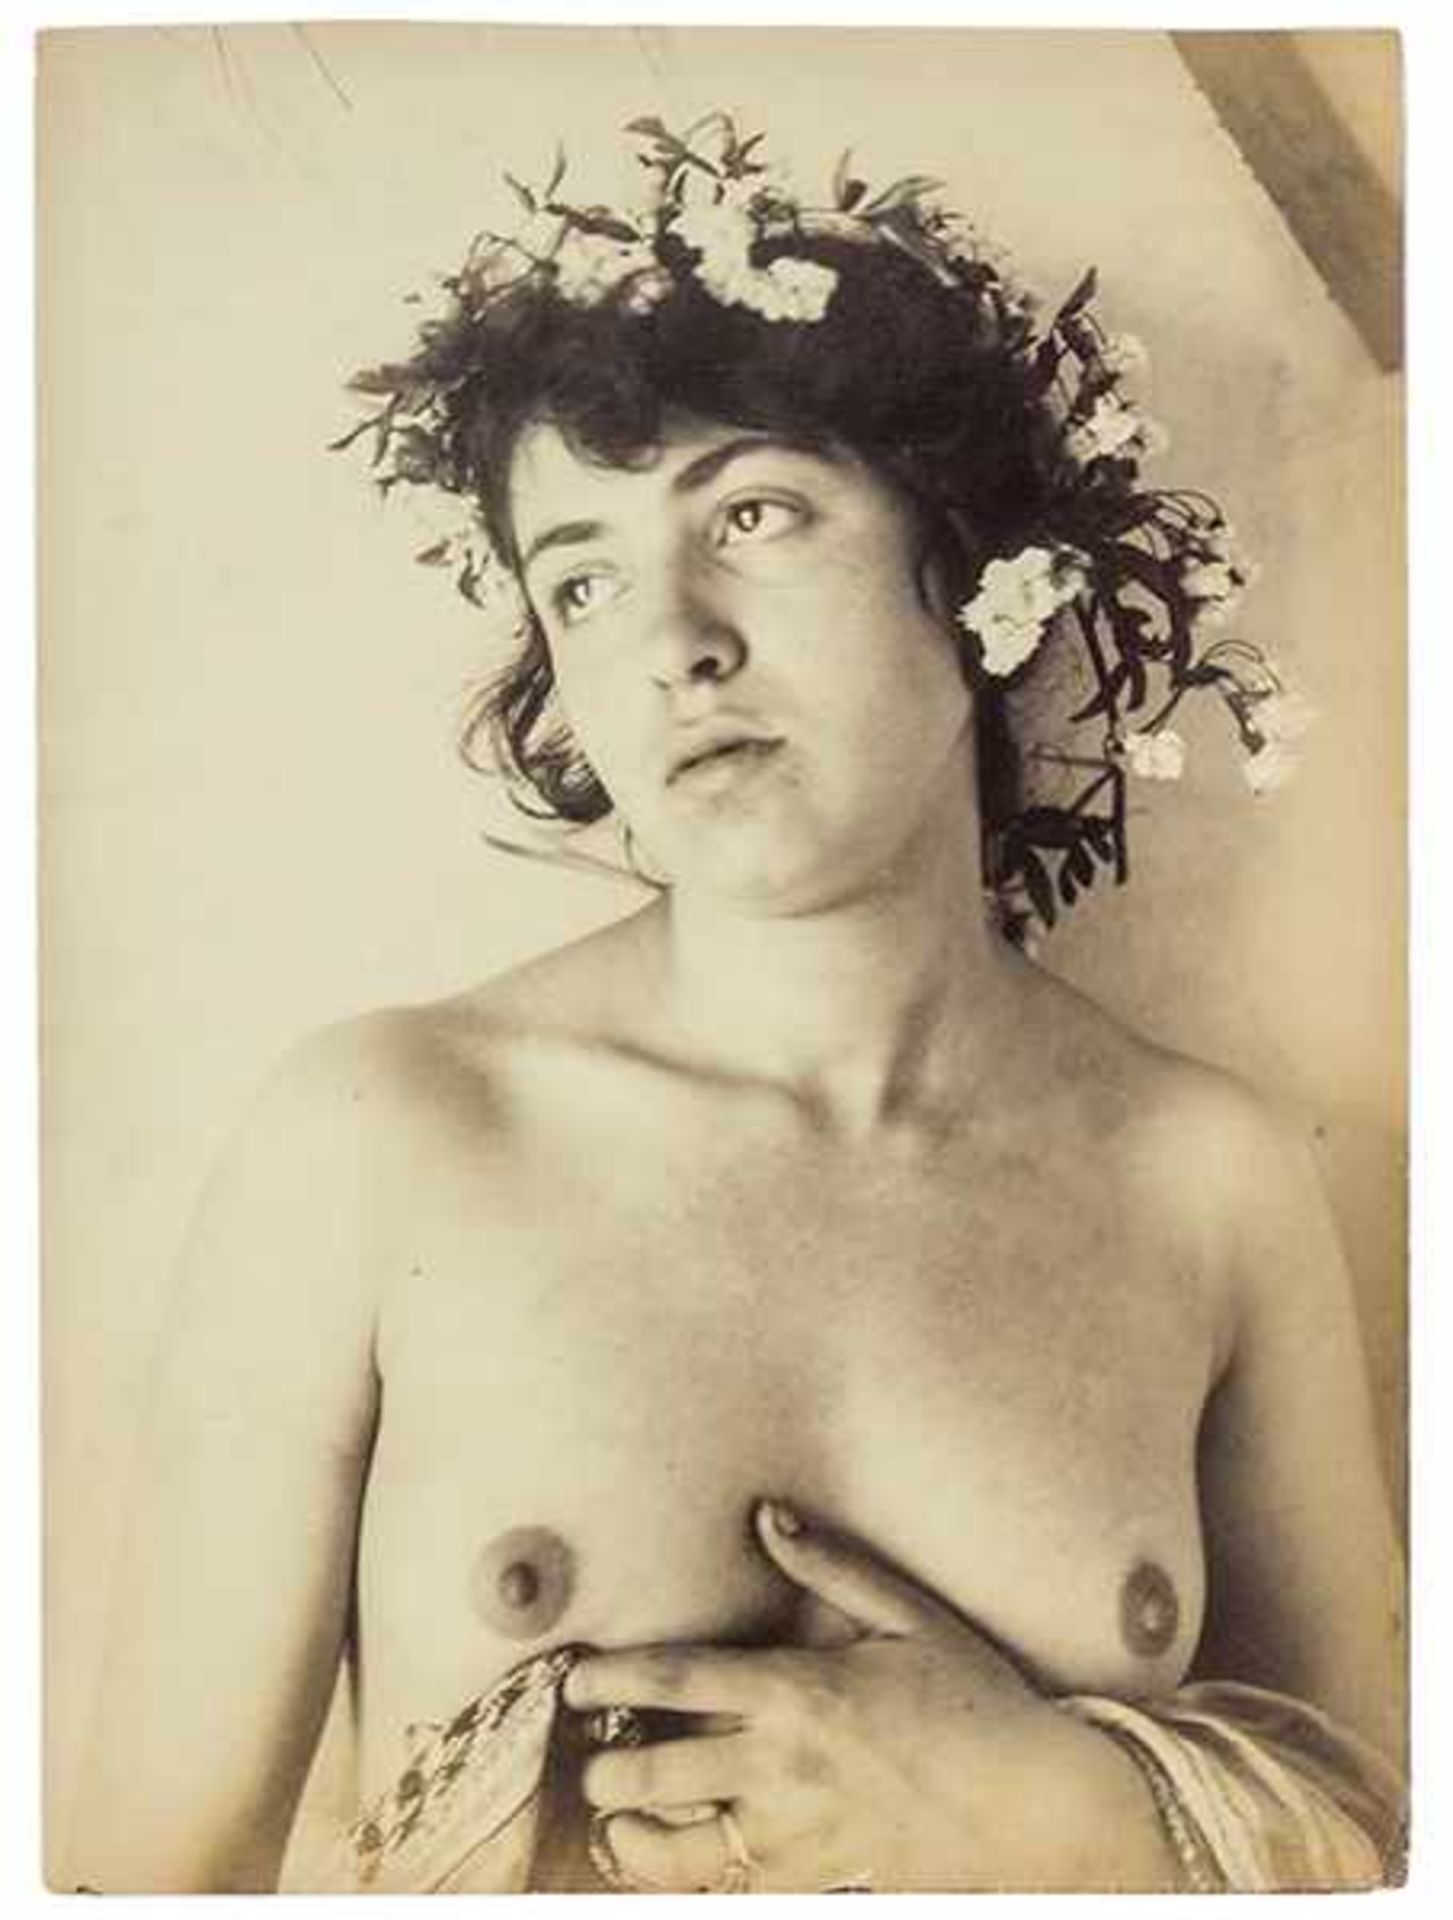 Plüschow, Wilhelm. Weiblicher Akt mit Blütenkranz. Original-Photographie. Vintage. Albuminabzug.